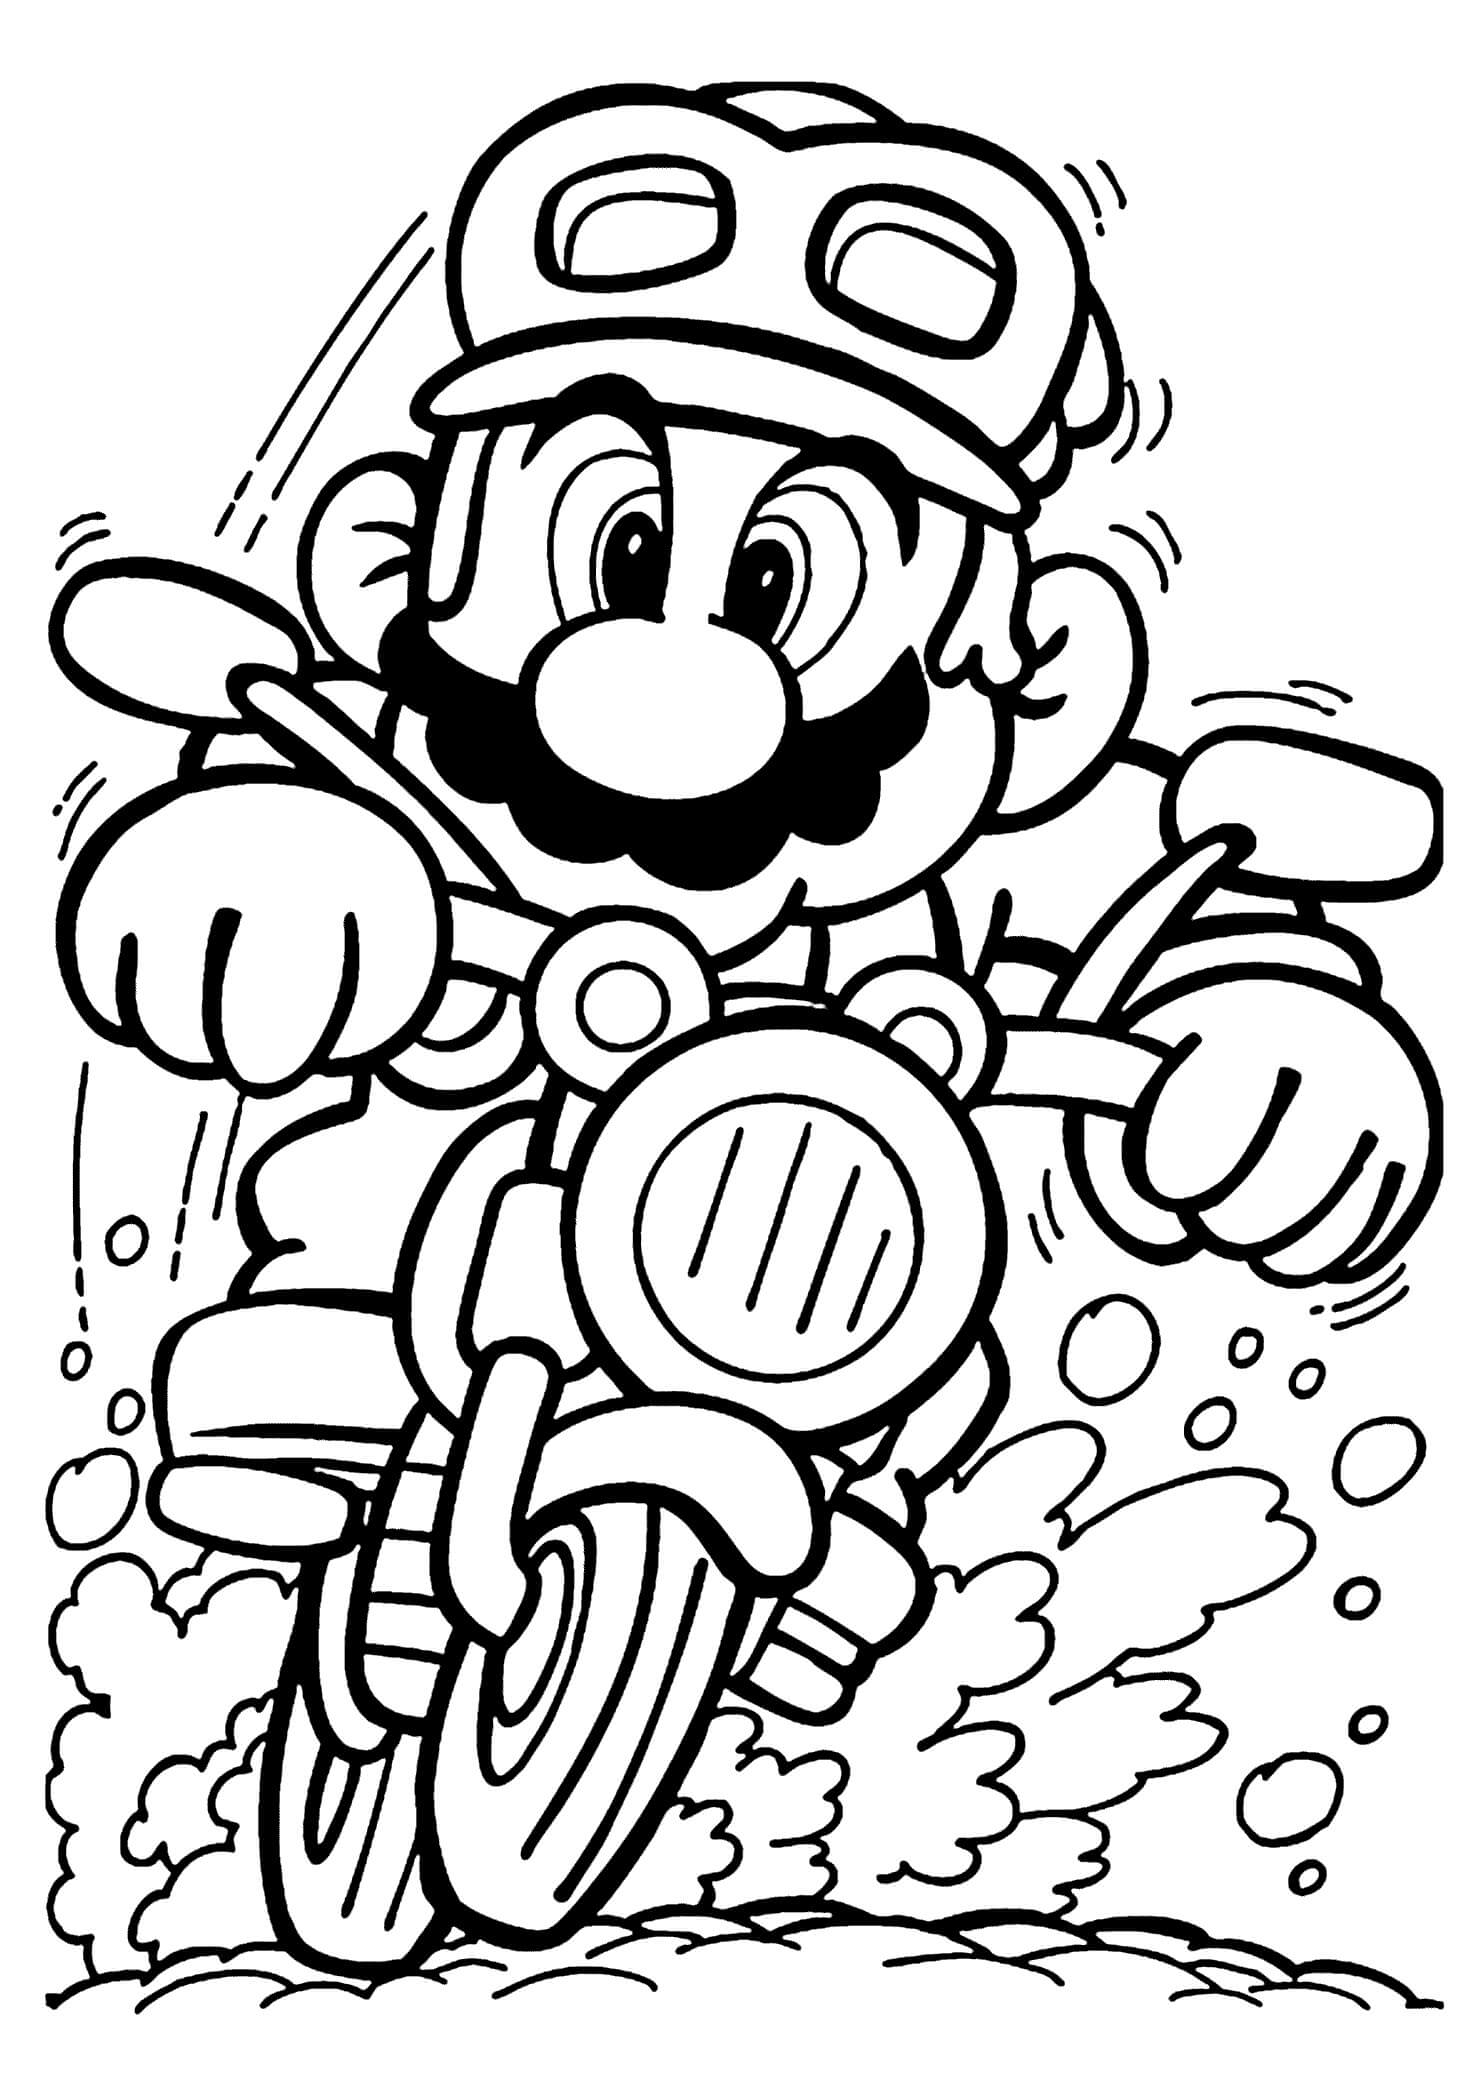 Mario Dirigindo para colorir